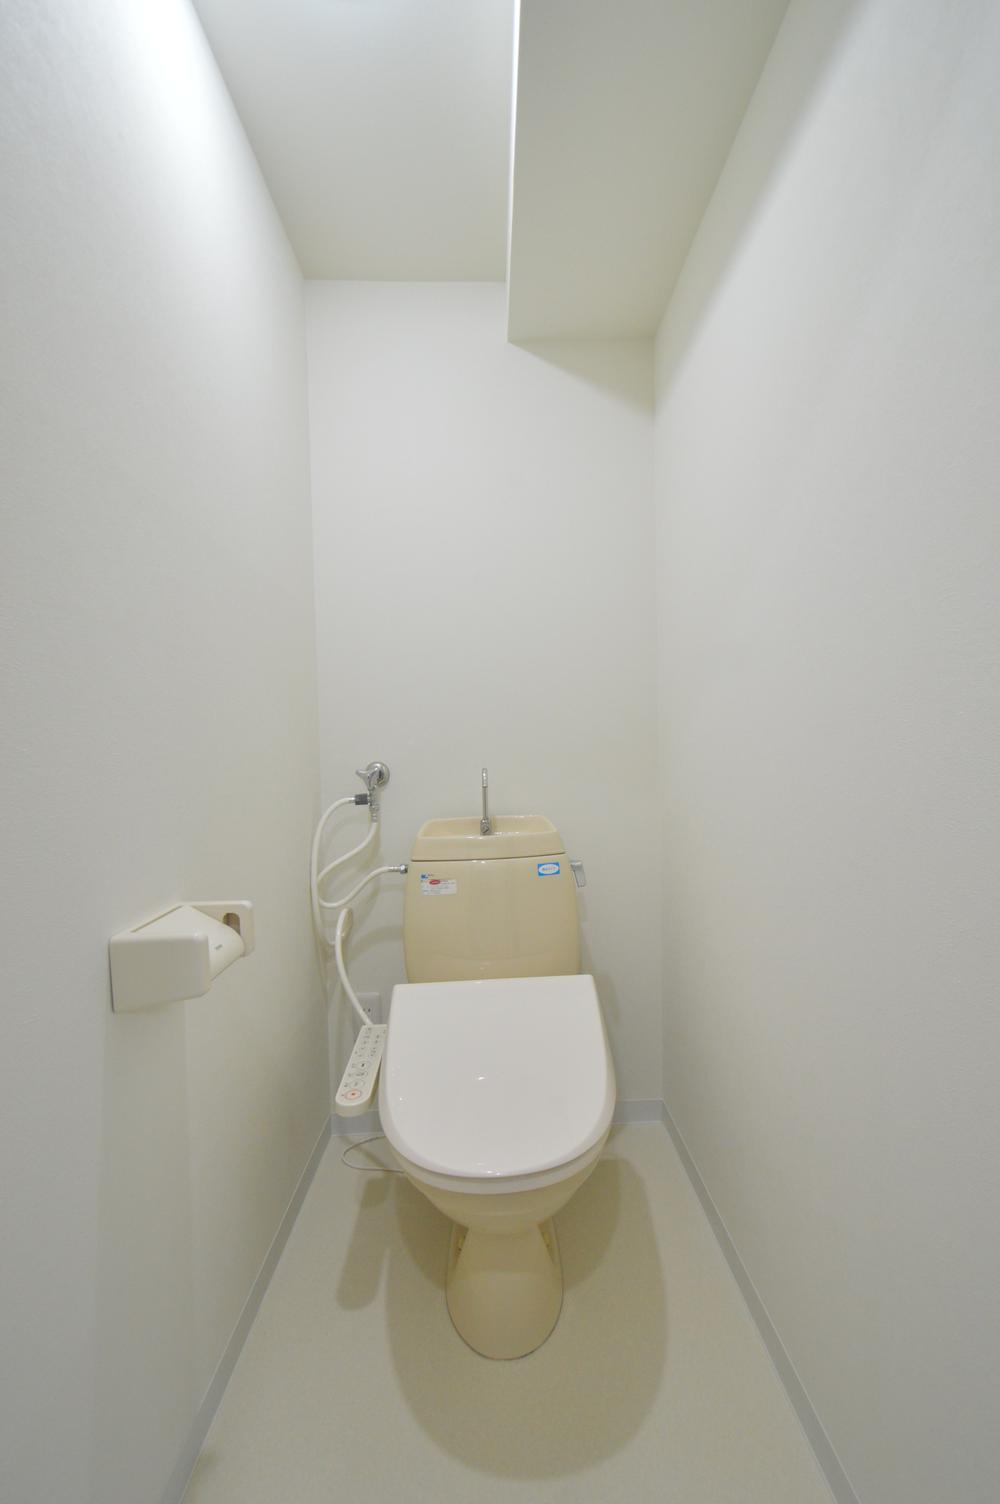 Toilet.  [toilet] Shower toilet new goods exchange settled